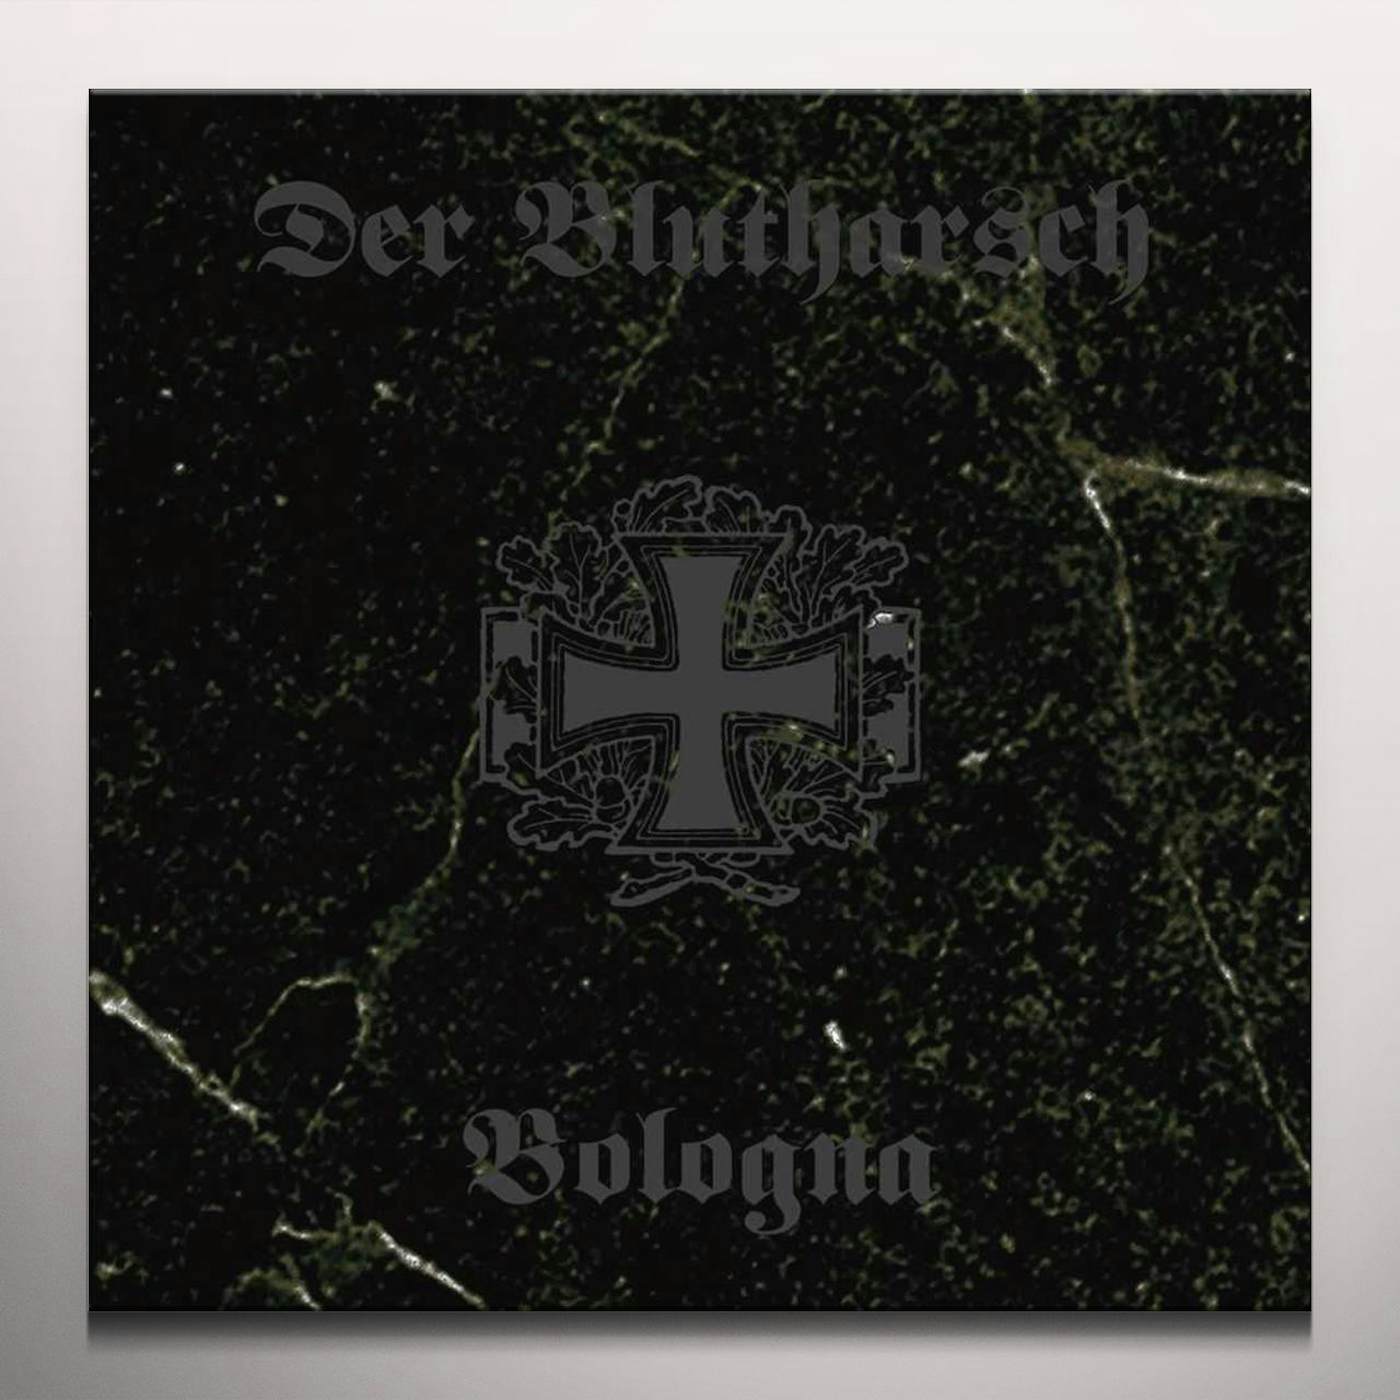 Der Blutharsch Bologna Vinyl Record